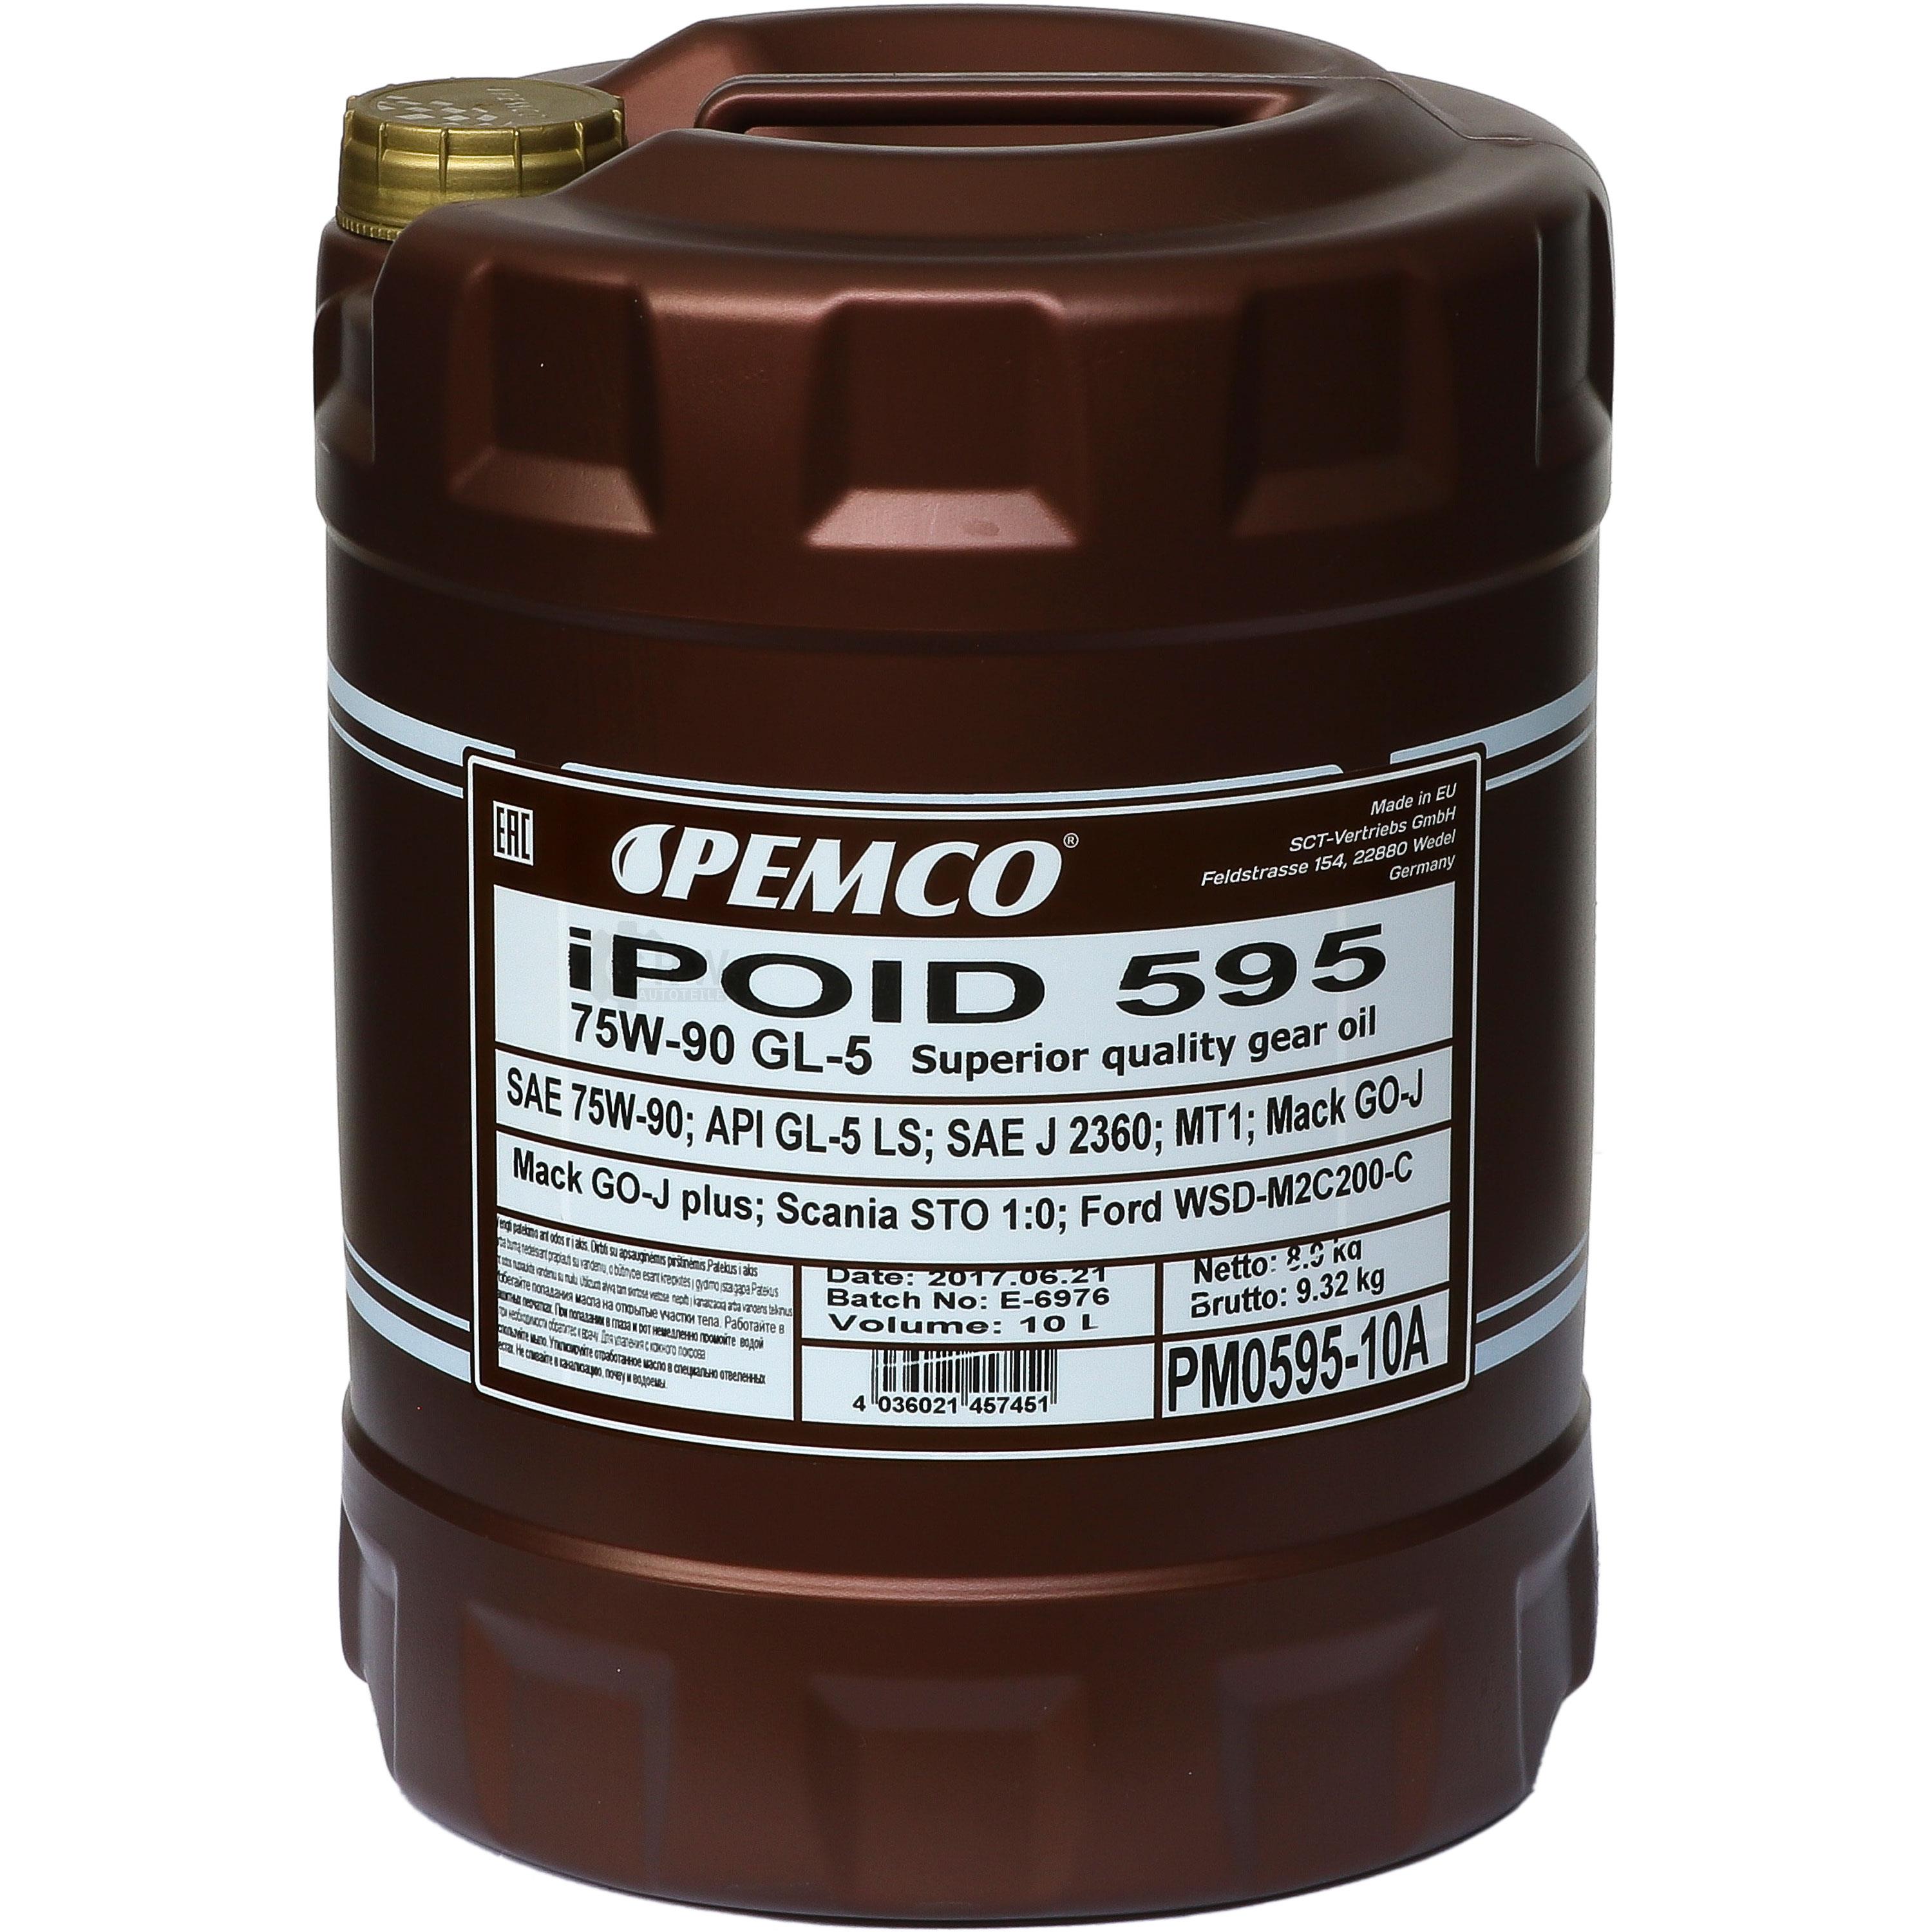 10 Liter  PEMCO Getriebeöl iPOID 595 75W-90 Gear Oil Öl